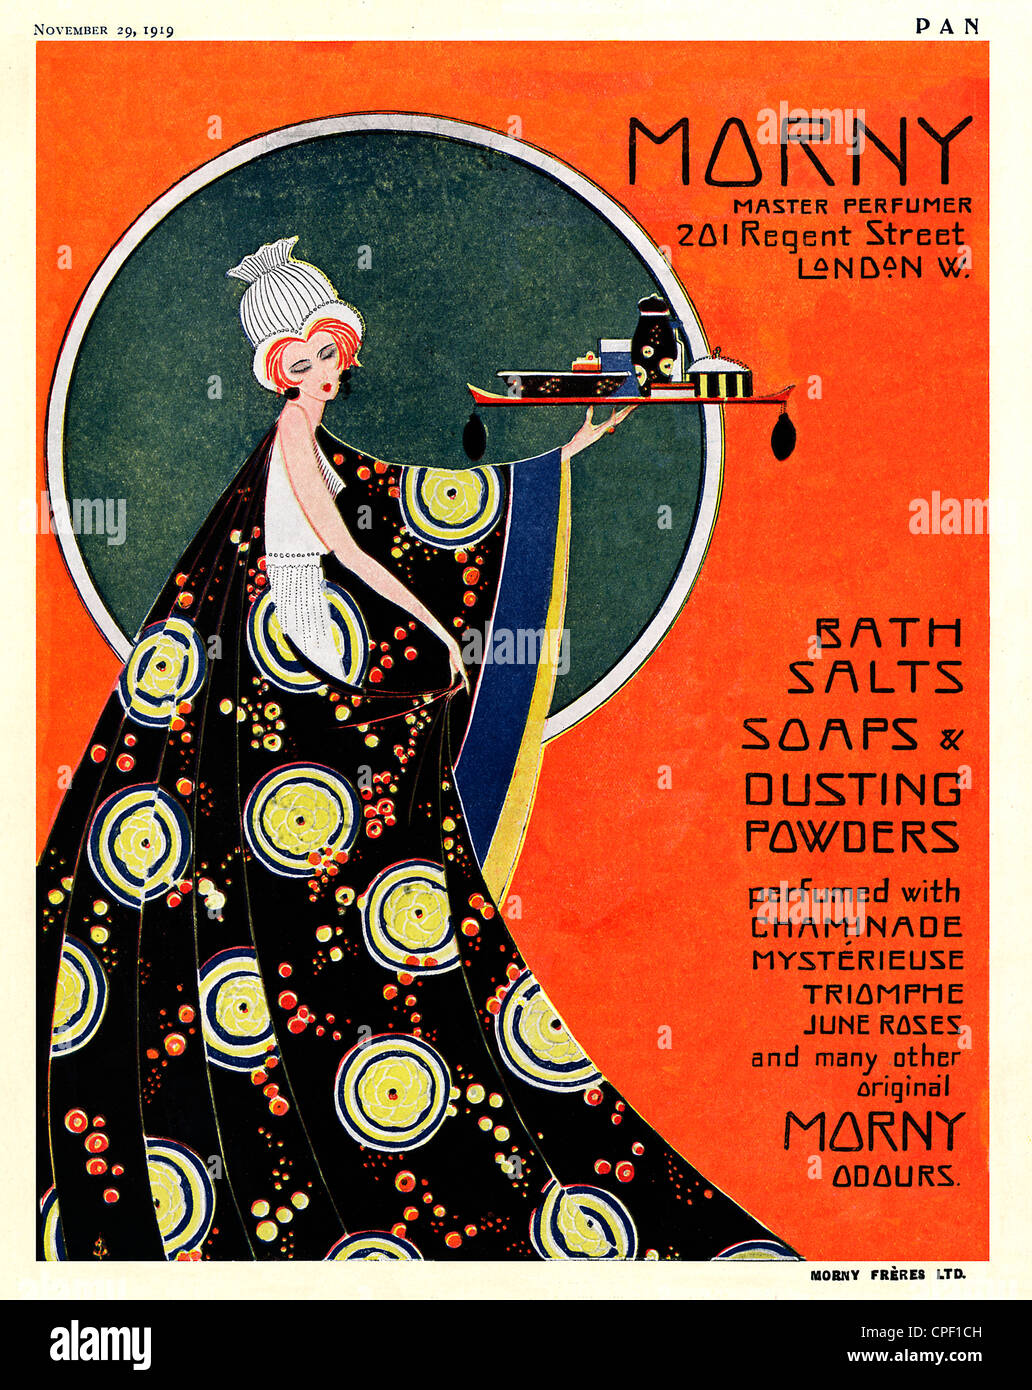 Morny, Parfum Art deco magazine 1919 publicité pour le maître parfumeur avec une base de Londres à Regent Street Banque D'Images